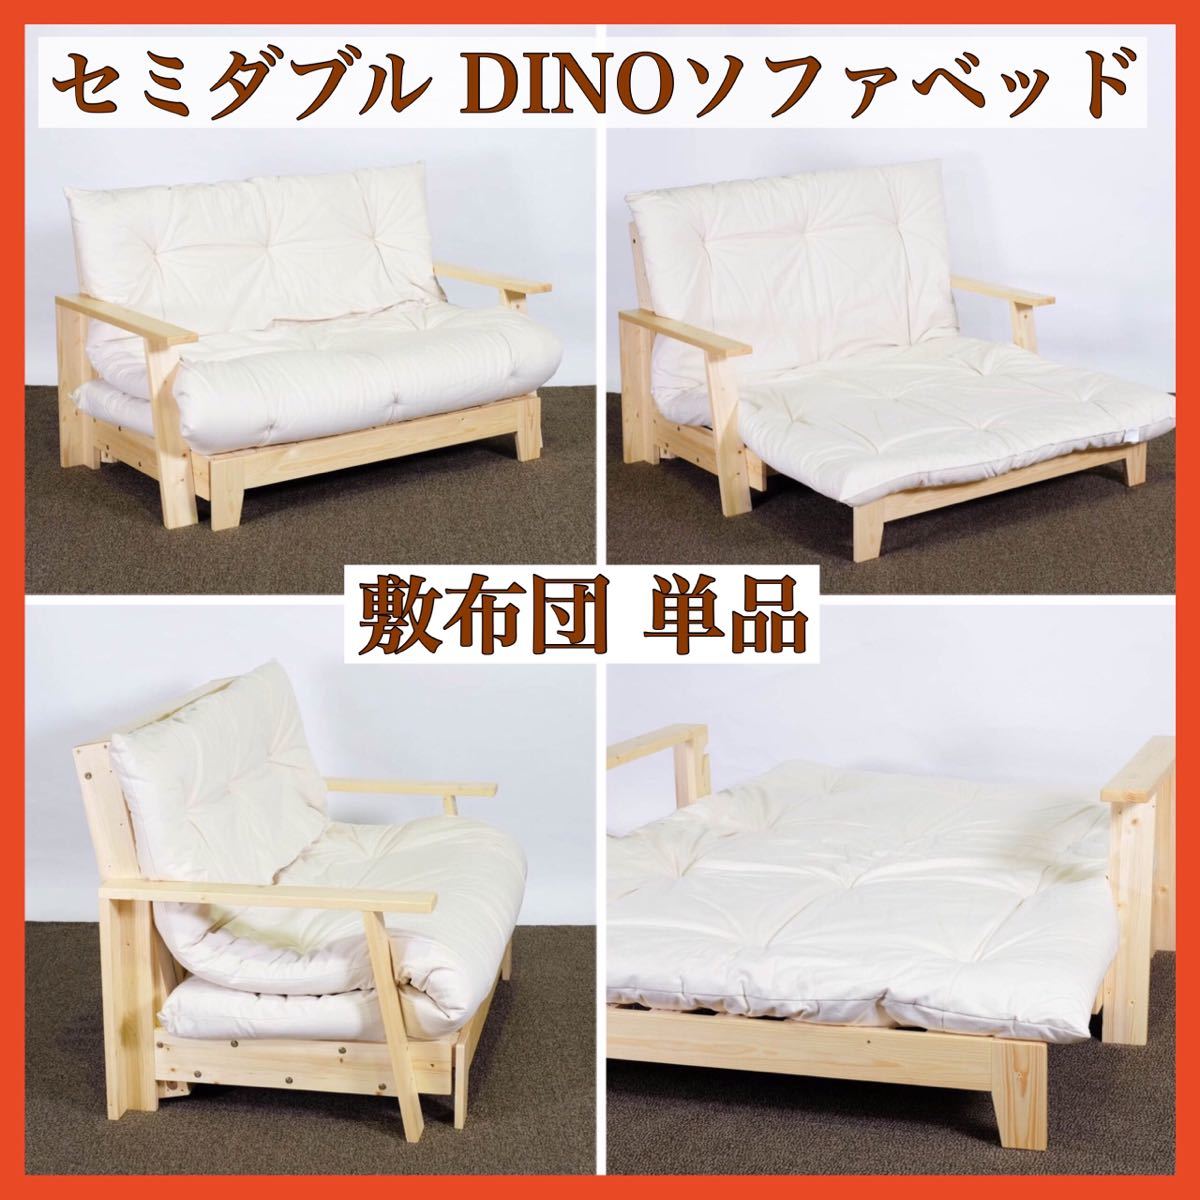  новый товар DINO диван-кровать матрац одиночный товар полуторный made in Kyoto Япония низкая упругость уретан три слой структура futon хлопок хлопок коврик диван-кровать для 